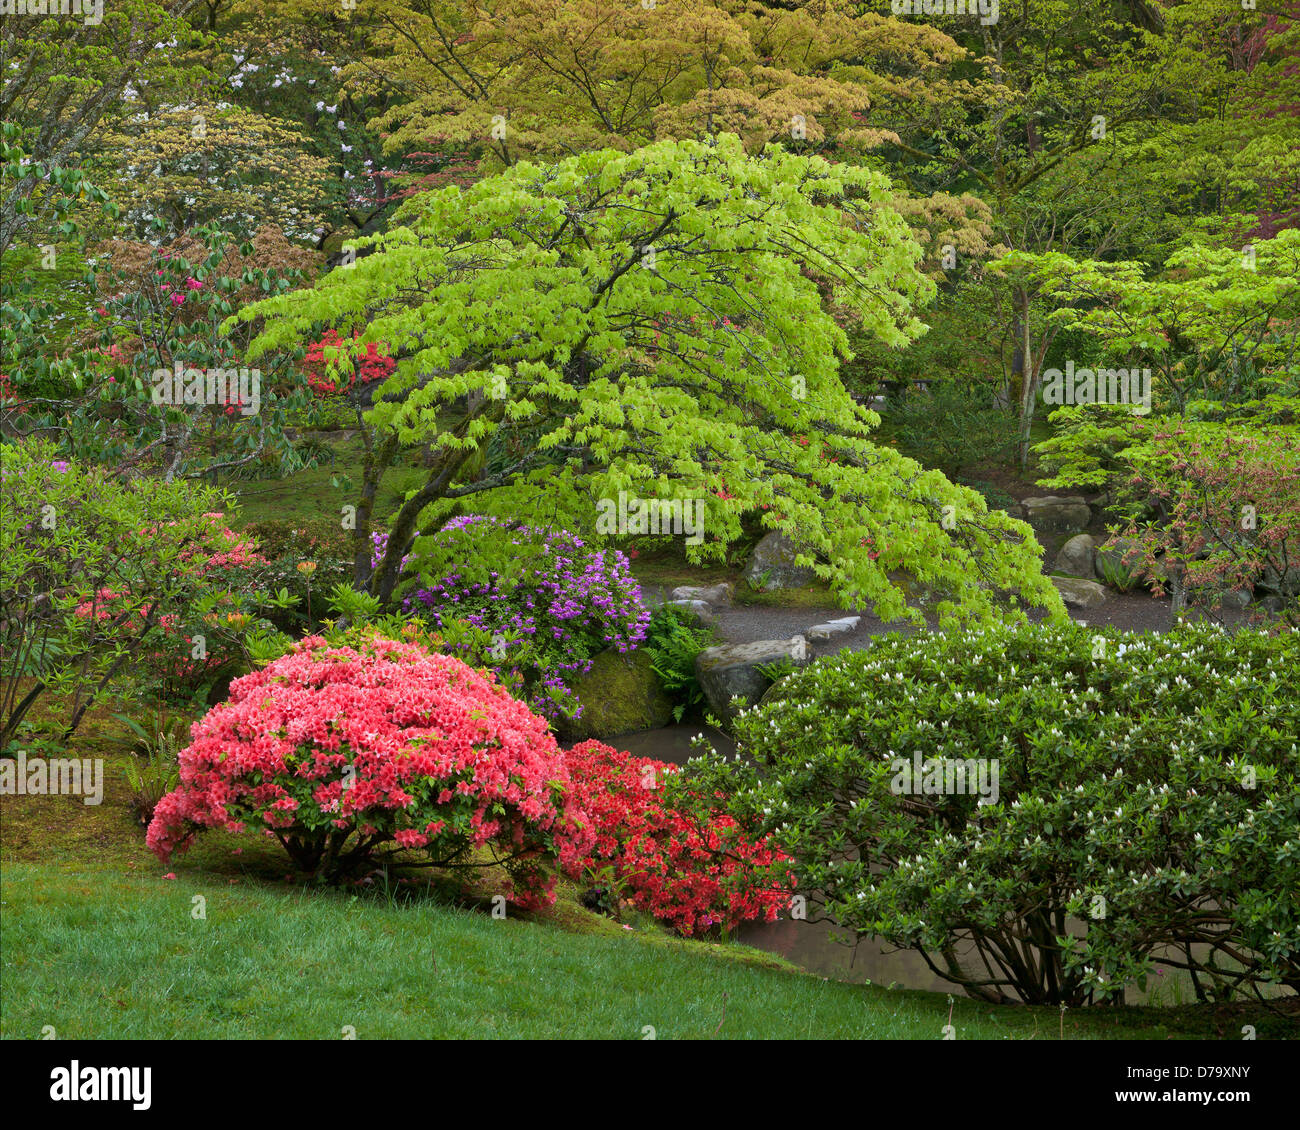 Seattle, WA: Immergrüne Azaleen blühen unter Feder farbig Ahorne in das Washington Park Arboretum japanischer Garten Stockfoto